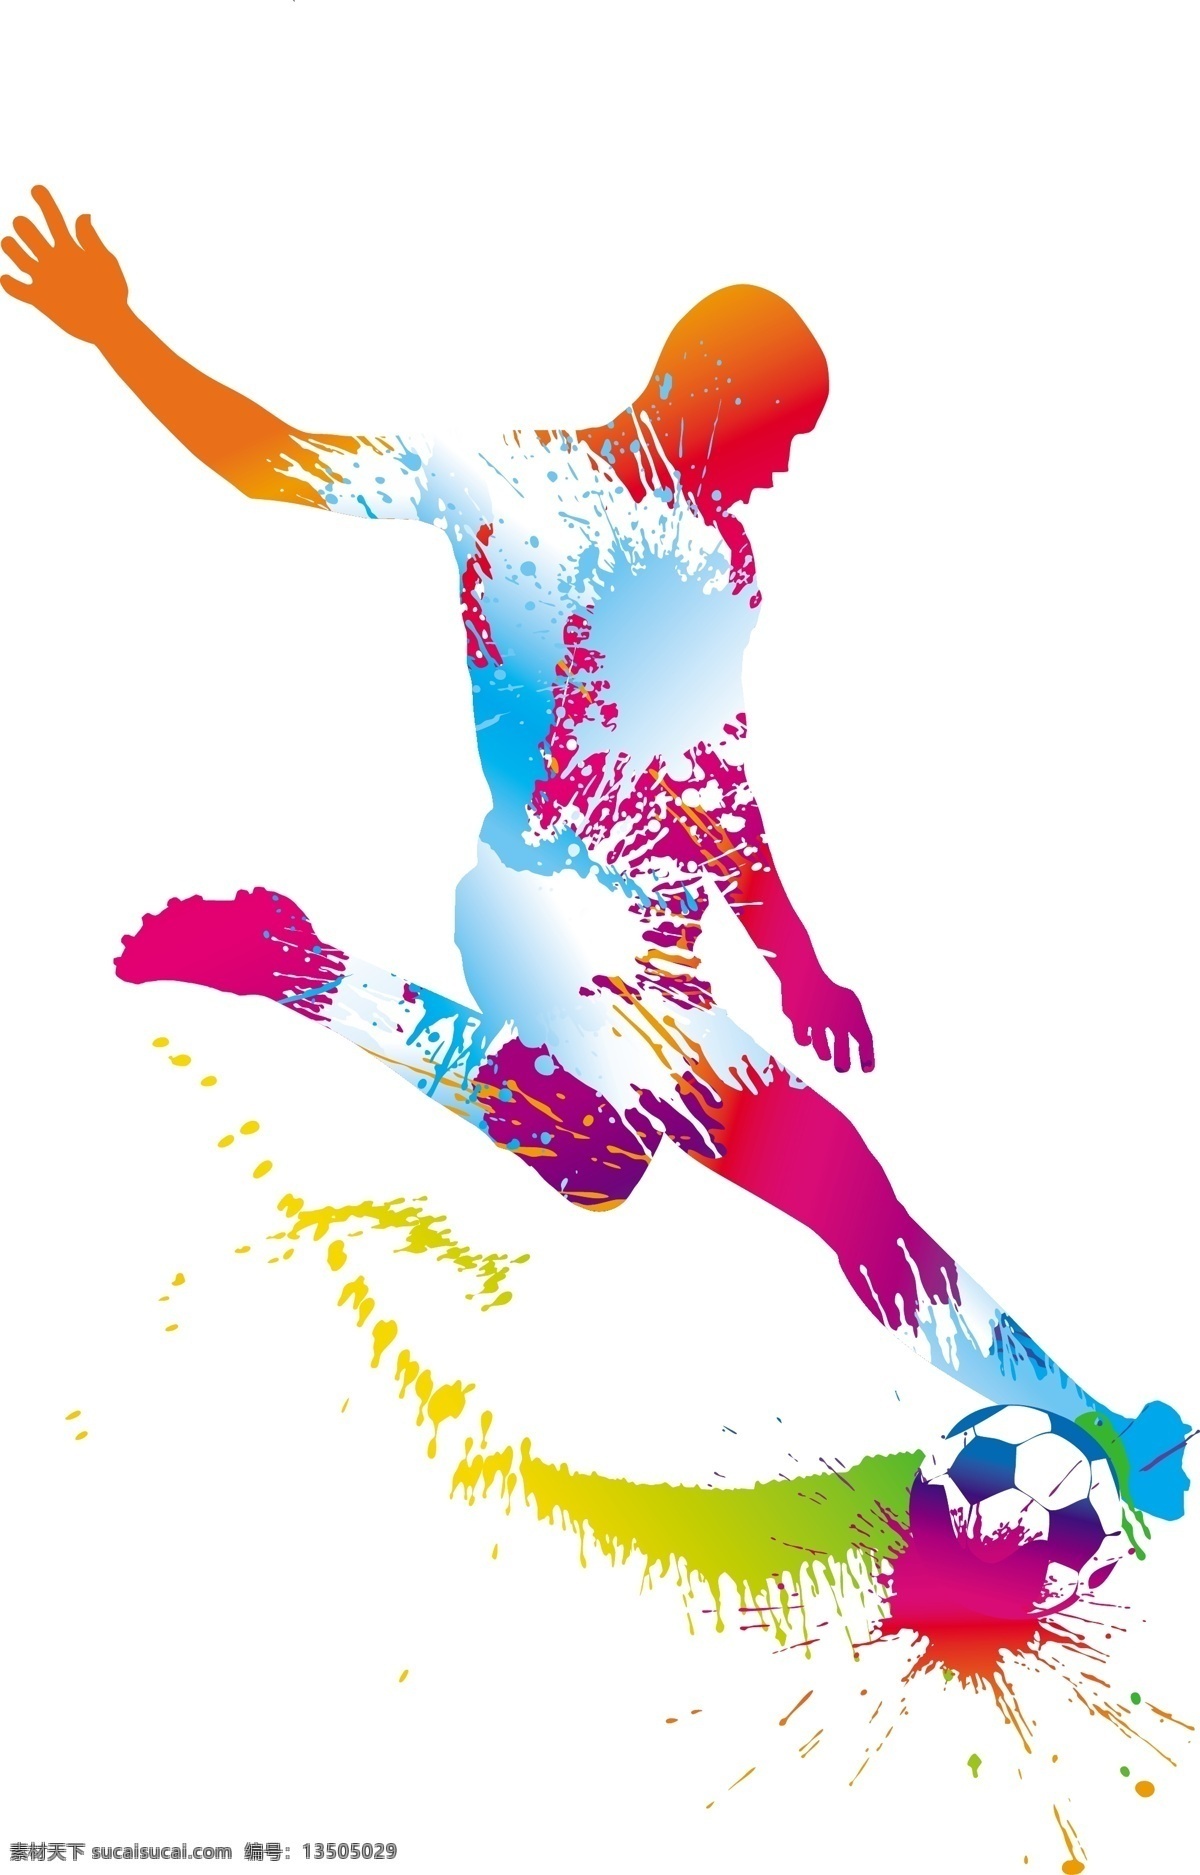 踢 足球 墨迹 人物 矢量 模板下载 世界杯 足球主题 墨迹喷溅 球员 体育运动 生活百科 矢量素材 白色